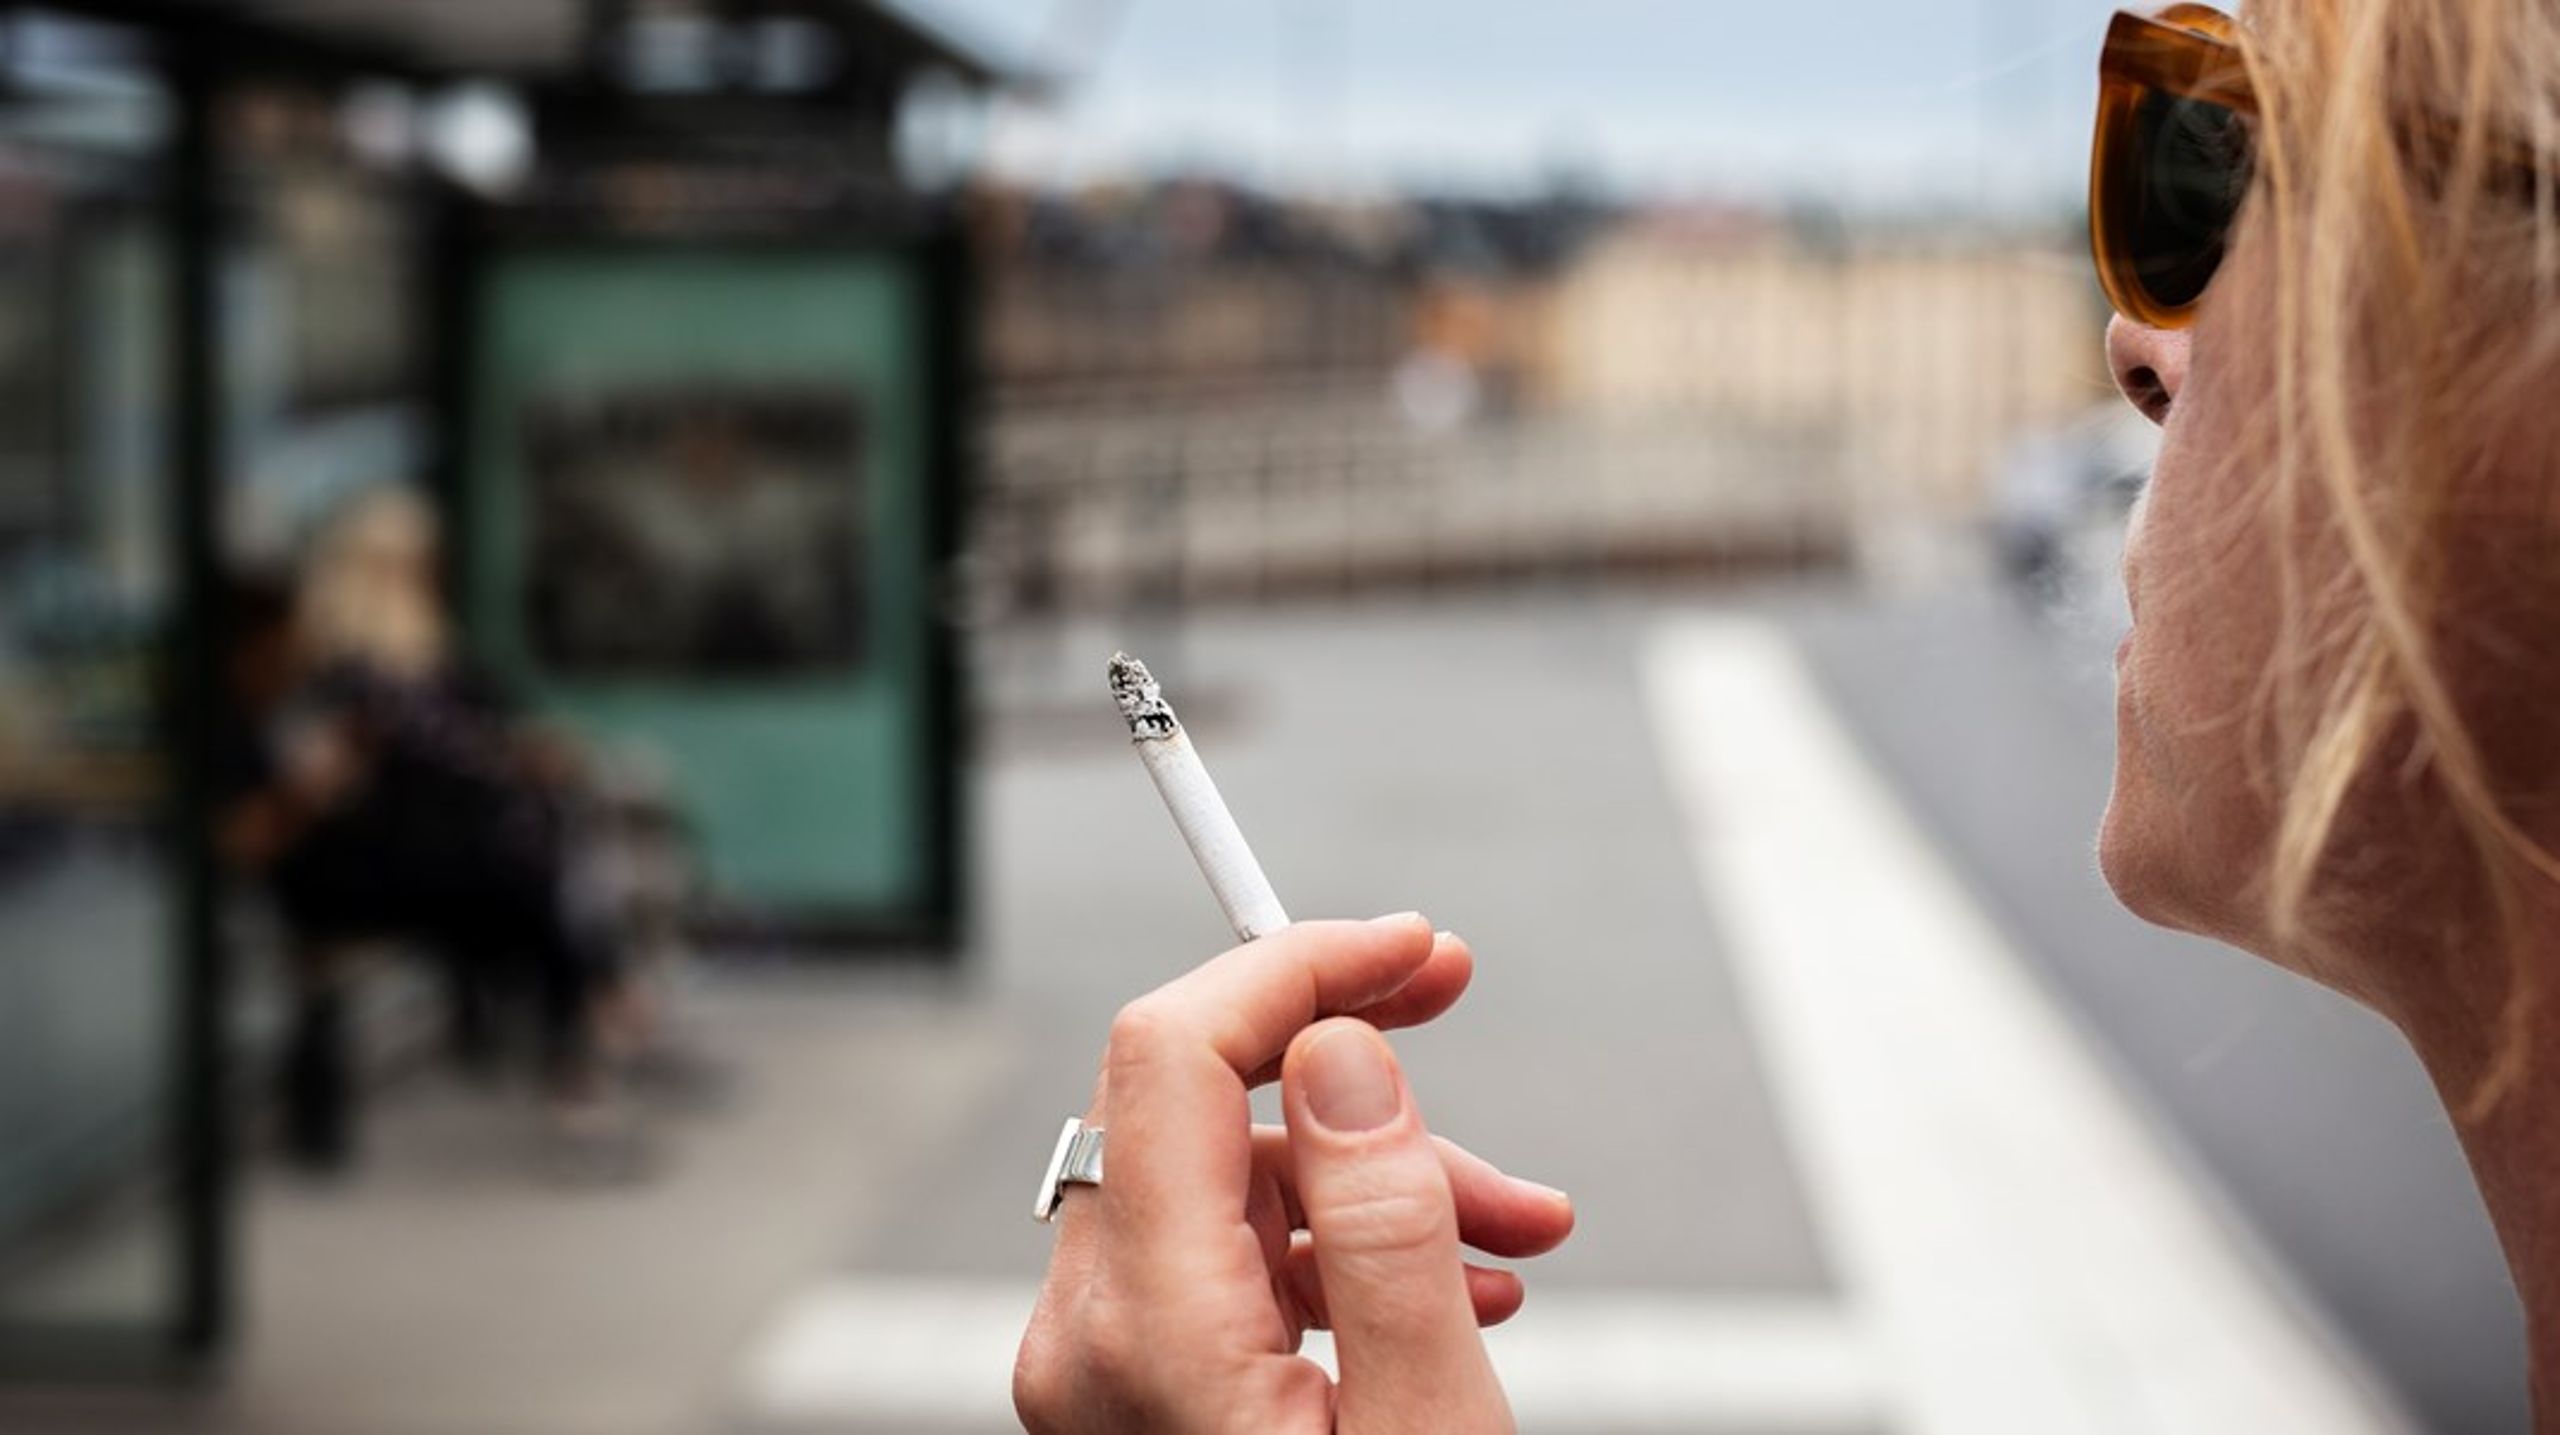 I dagsläget går utvecklingen åt fel håll med ett växande tobaksbruk bland unga, skriver debattören.